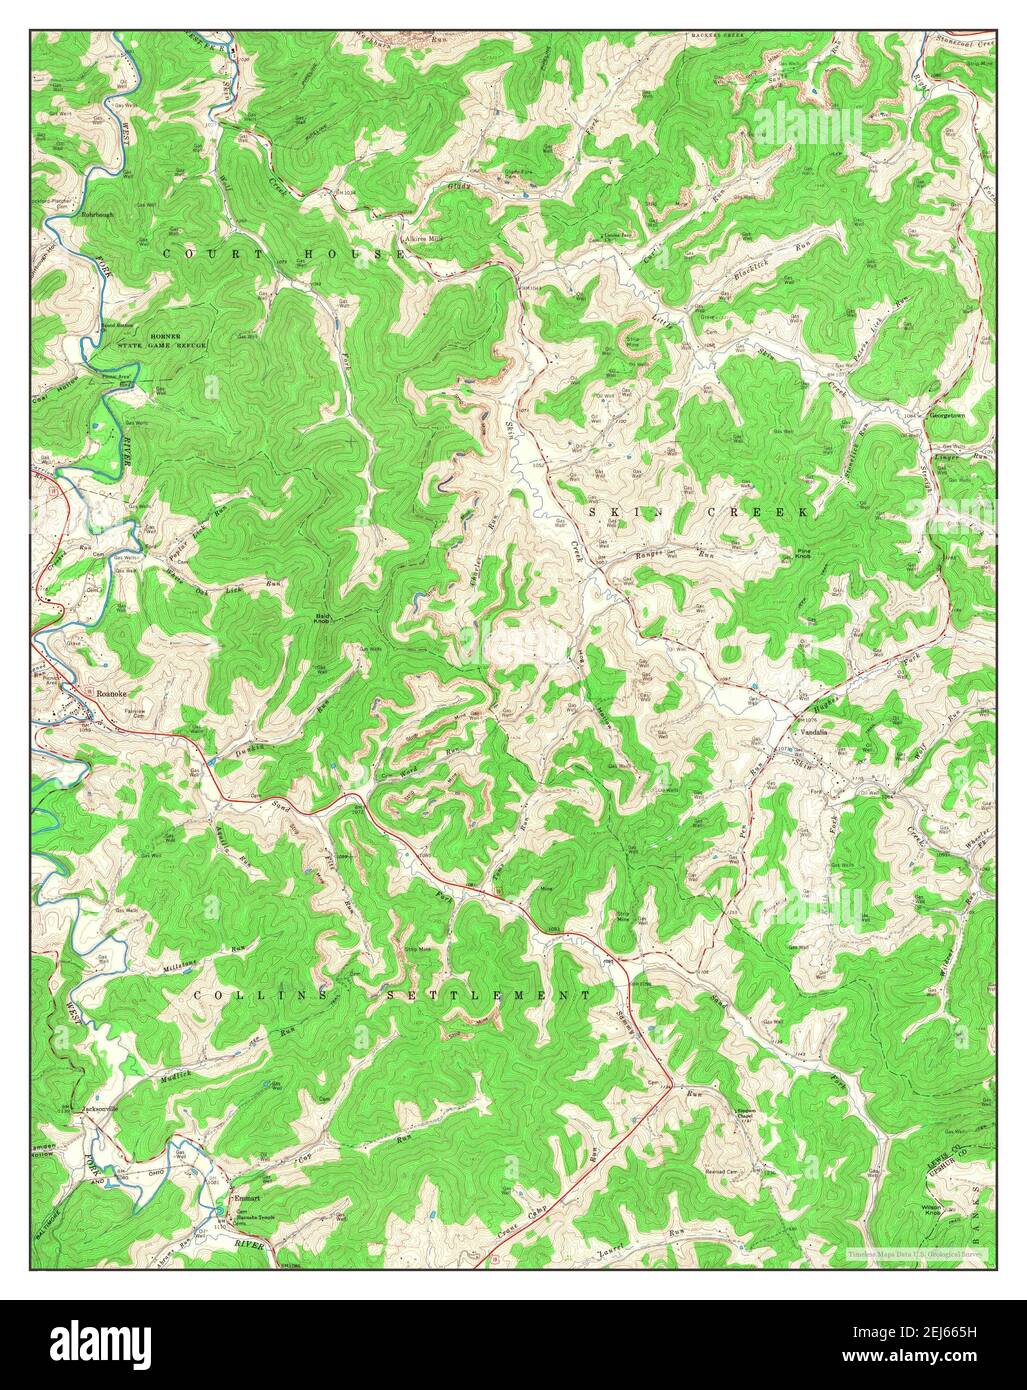 Roanoke, Virginie occidentale, carte 1966, 1:24000, États-Unis d'Amérique par Timeless Maps, données U.S. Geological Survey Banque D'Images